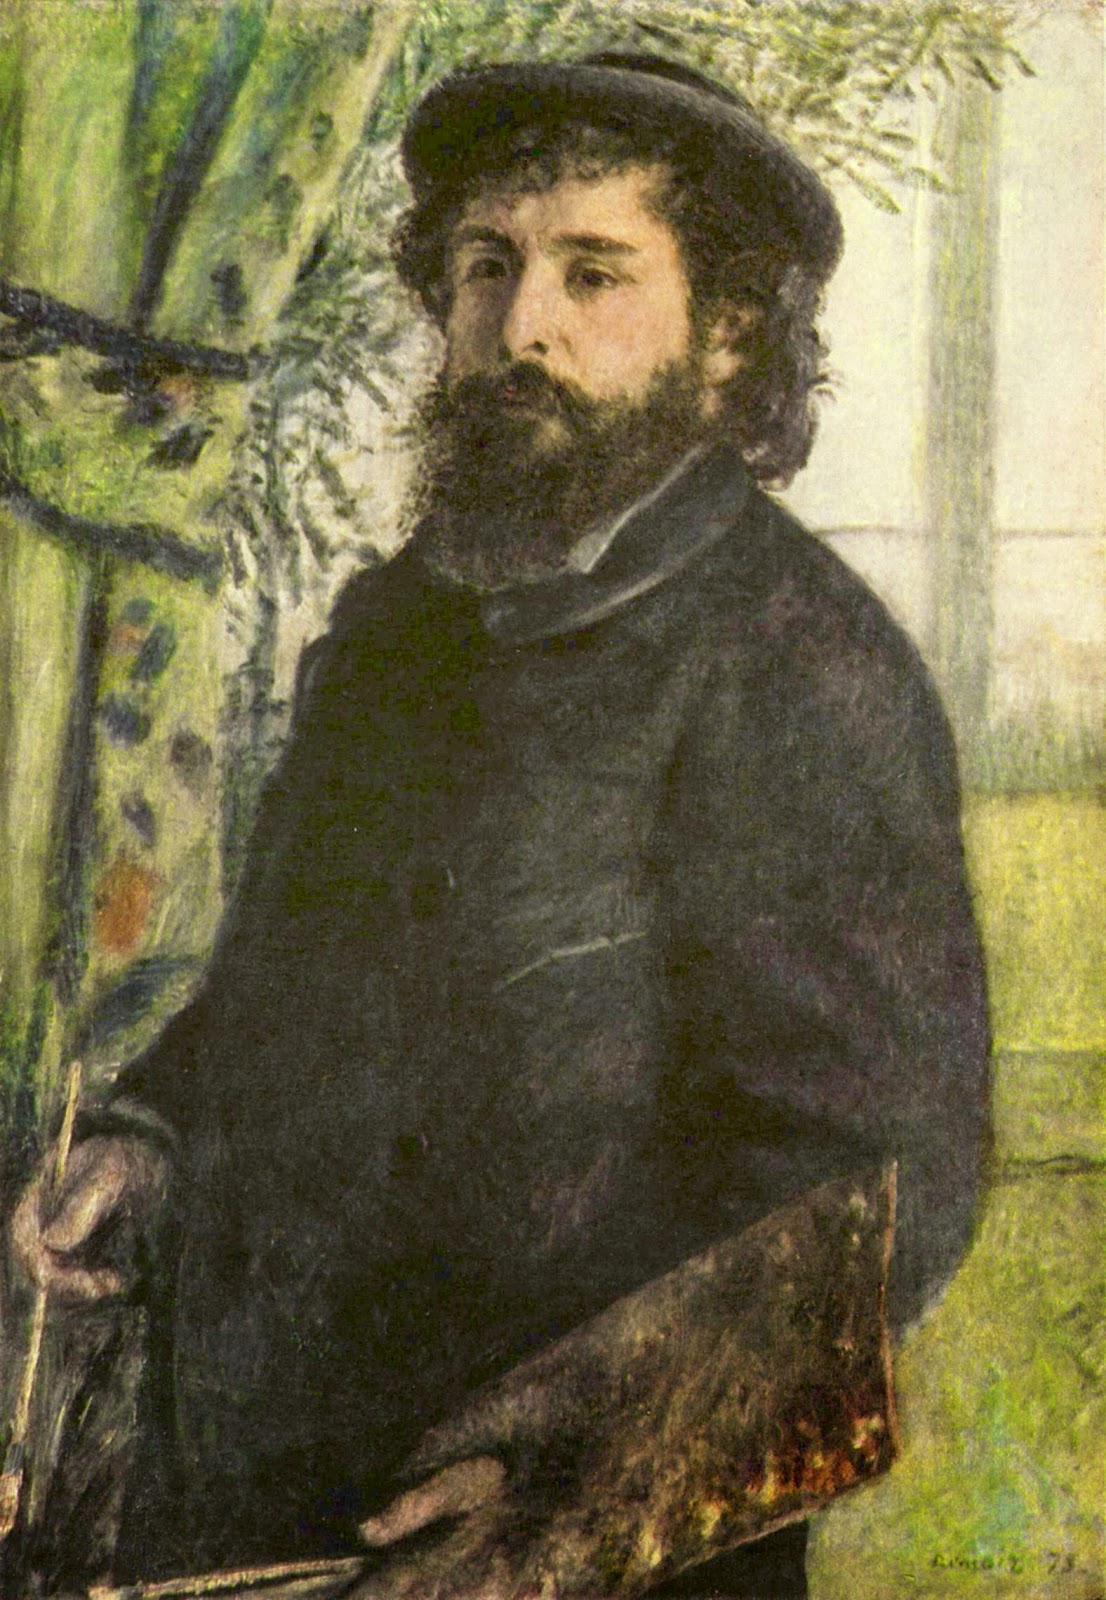 Pierre+Auguste+Renoir-1841-1-19 (955).jpg